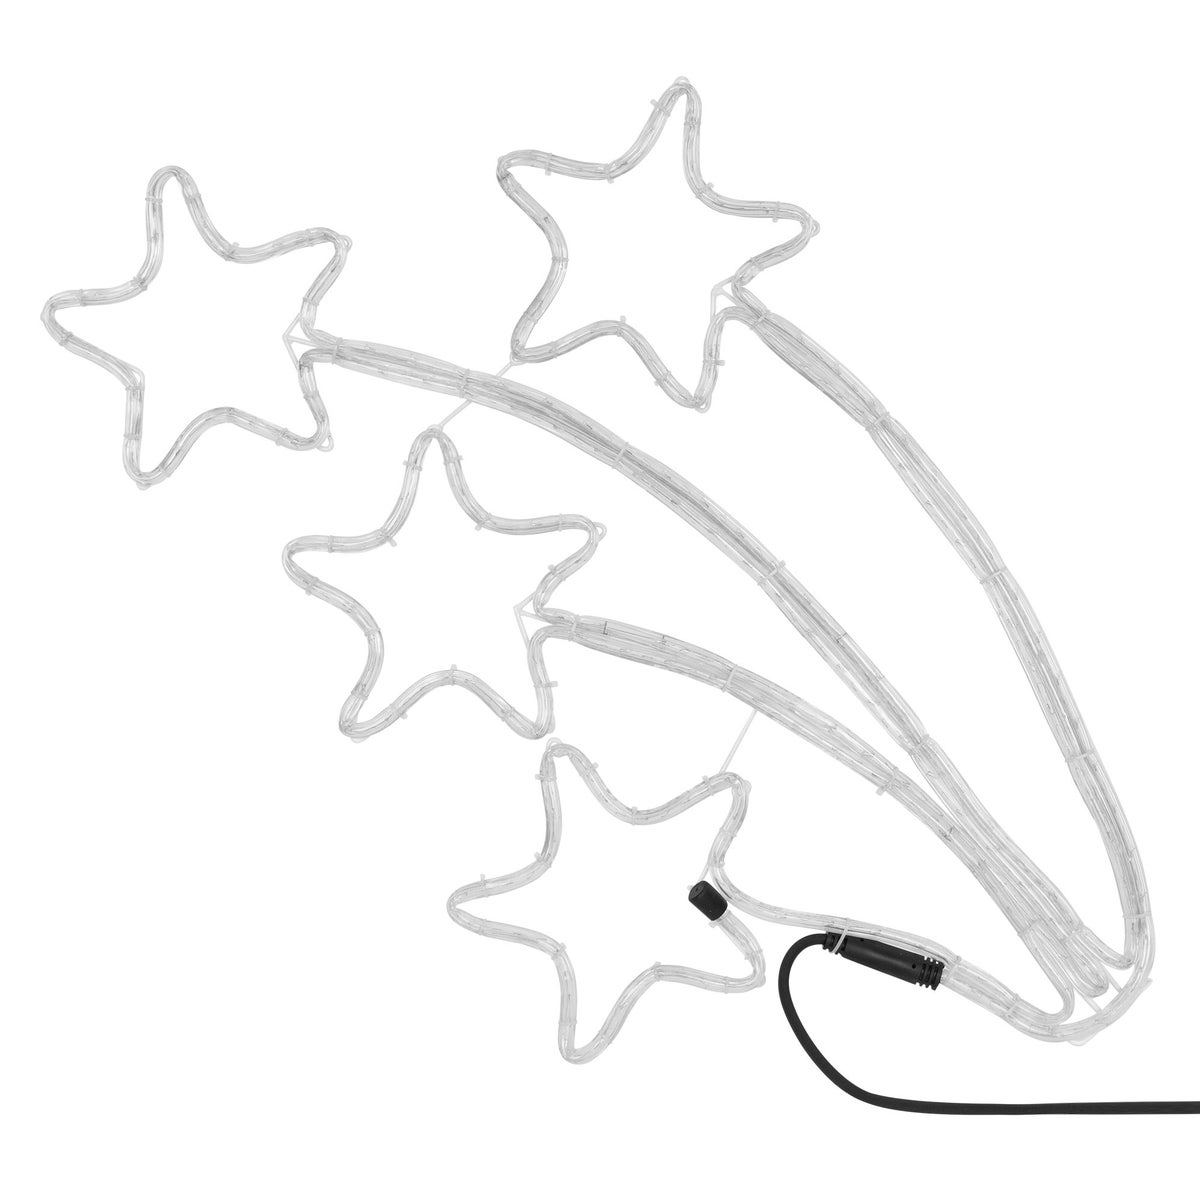 ECD Germany LED Sternschnuppe vierfach mit 216 LED-Birnen, 61x57 cm, Warmweiß, 230V, Helles, angenehmes Licht, IP44, Außen/Innen, Weihnachtsbeleuchtung LED Lichtschlauch Lichterkette Weihnachtslicht